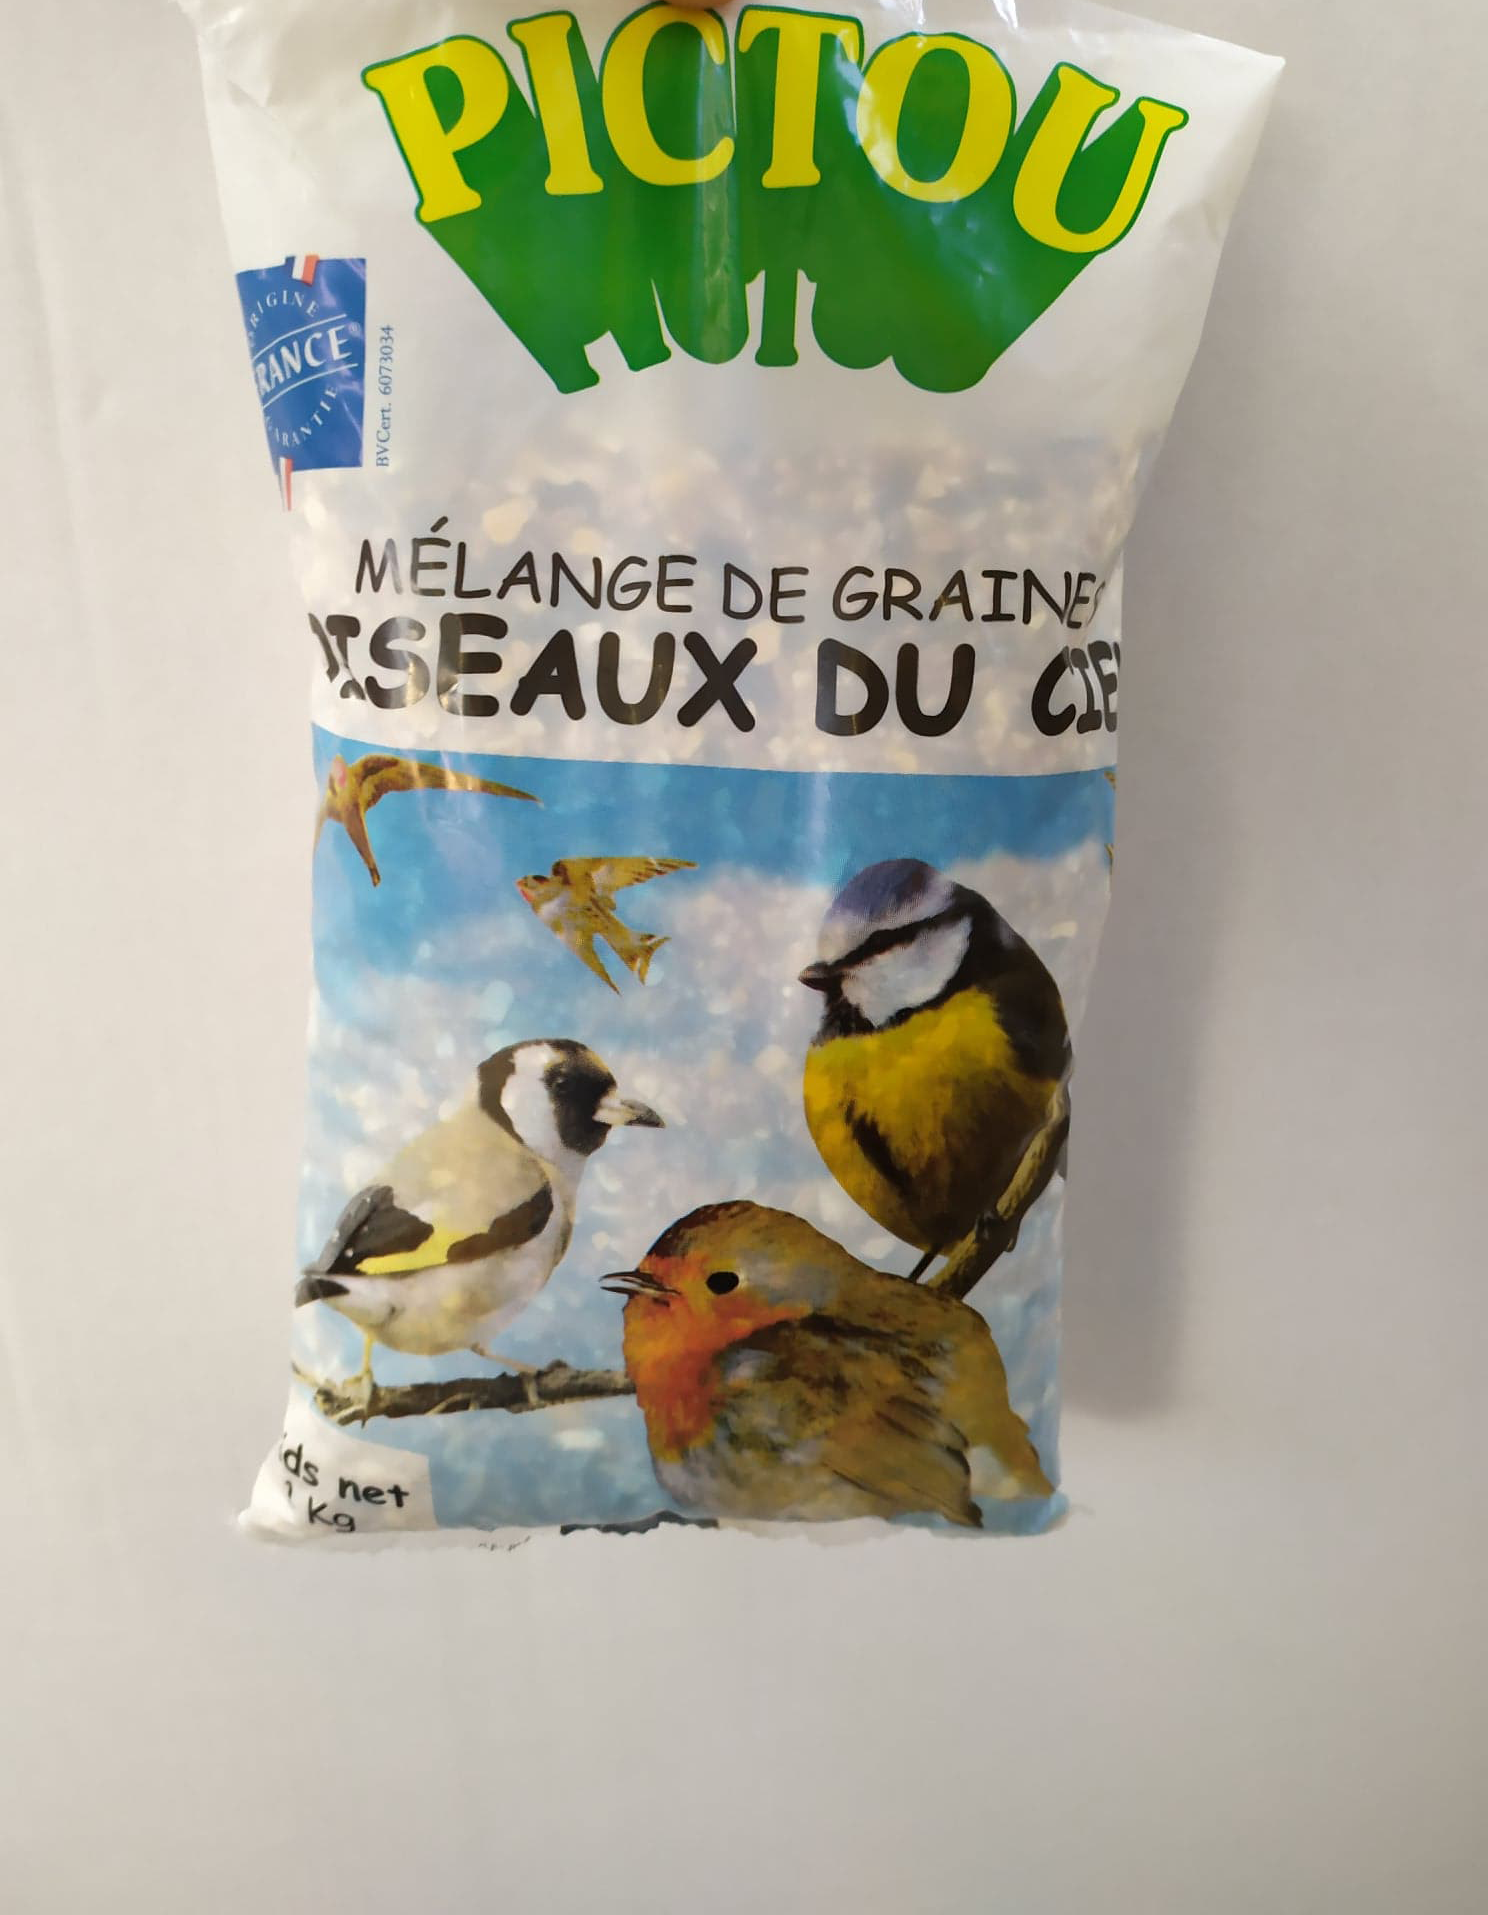 Pictou Boules De Graines Pour Oiseaux Du Ciel boules x10 900g 